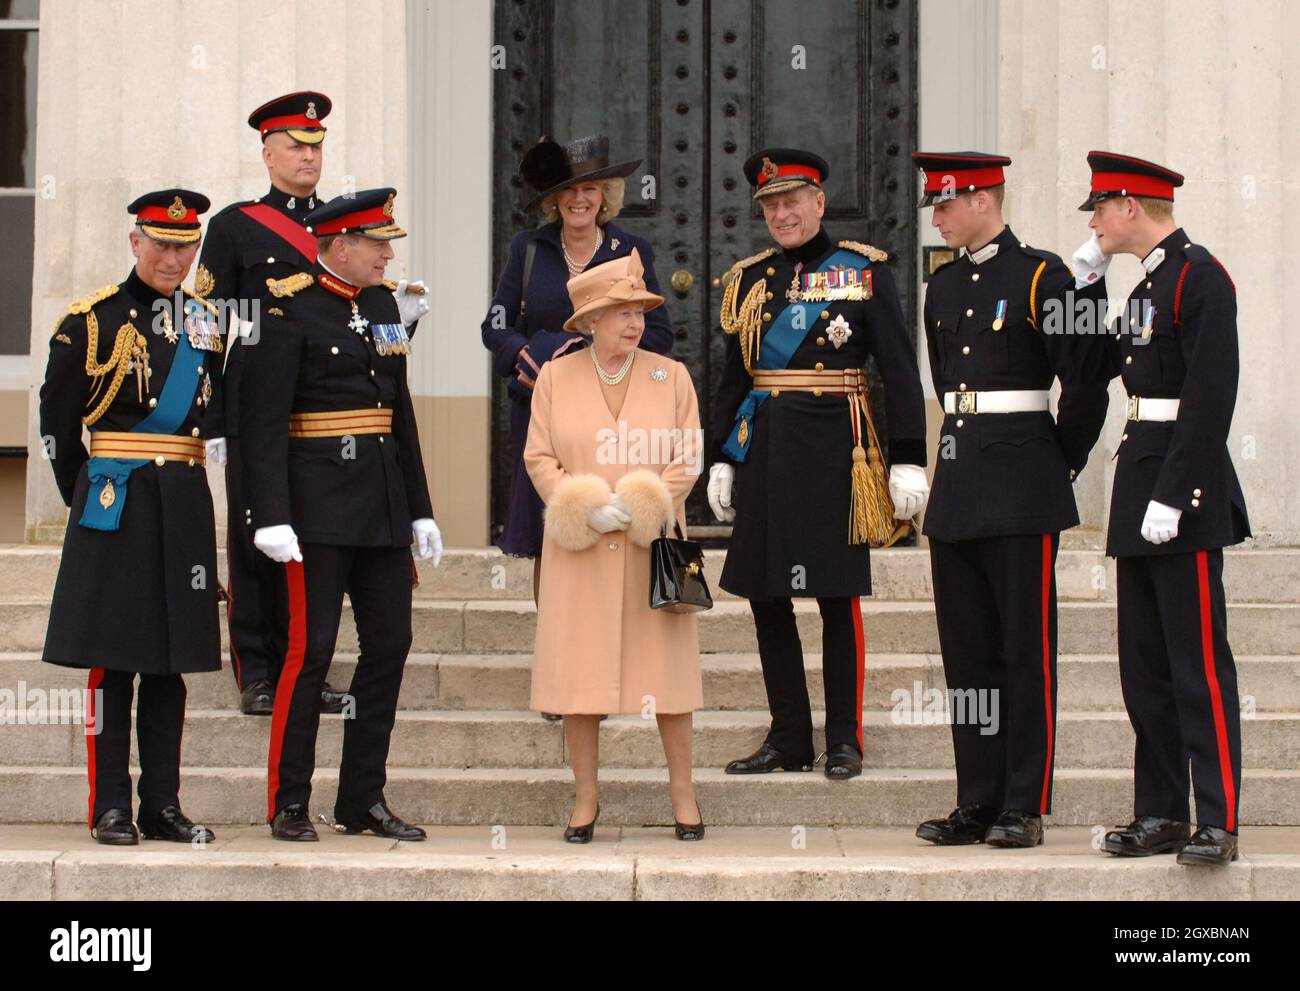 Le Prince Charles, Prince de Galles (L), la Reine Elizabeth II le Prince PhiIip, duc d'Édimbourg (3e de droite), Camilla, Duchesse de Cornwall, le Prince William et le Prince Harry (R) se posent ensemble. Banque D'Images